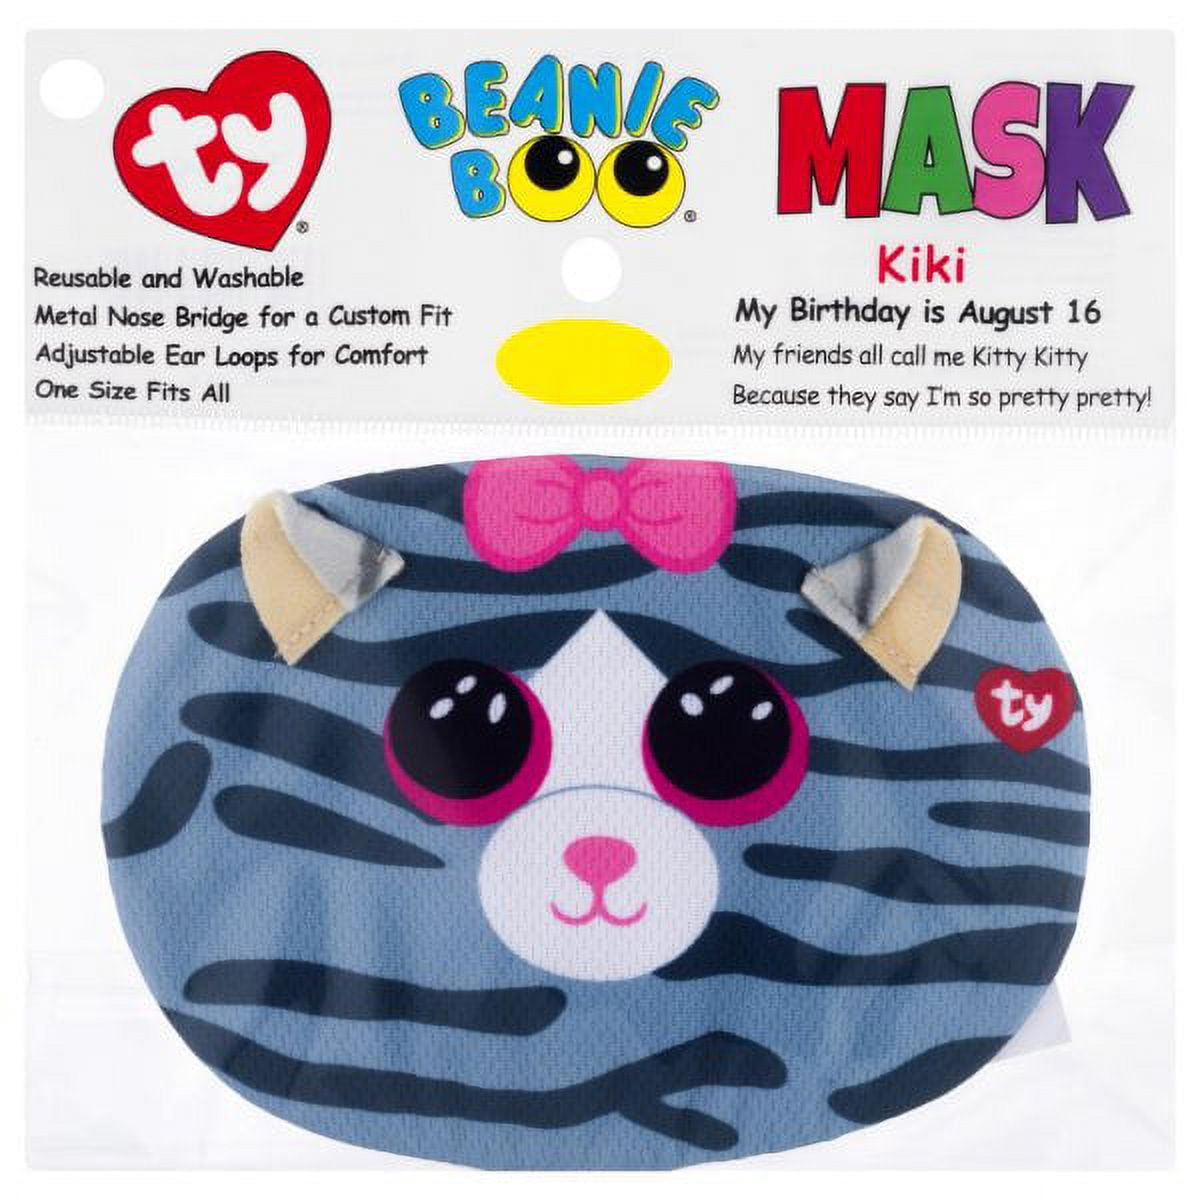 Kiki's Face Masks 